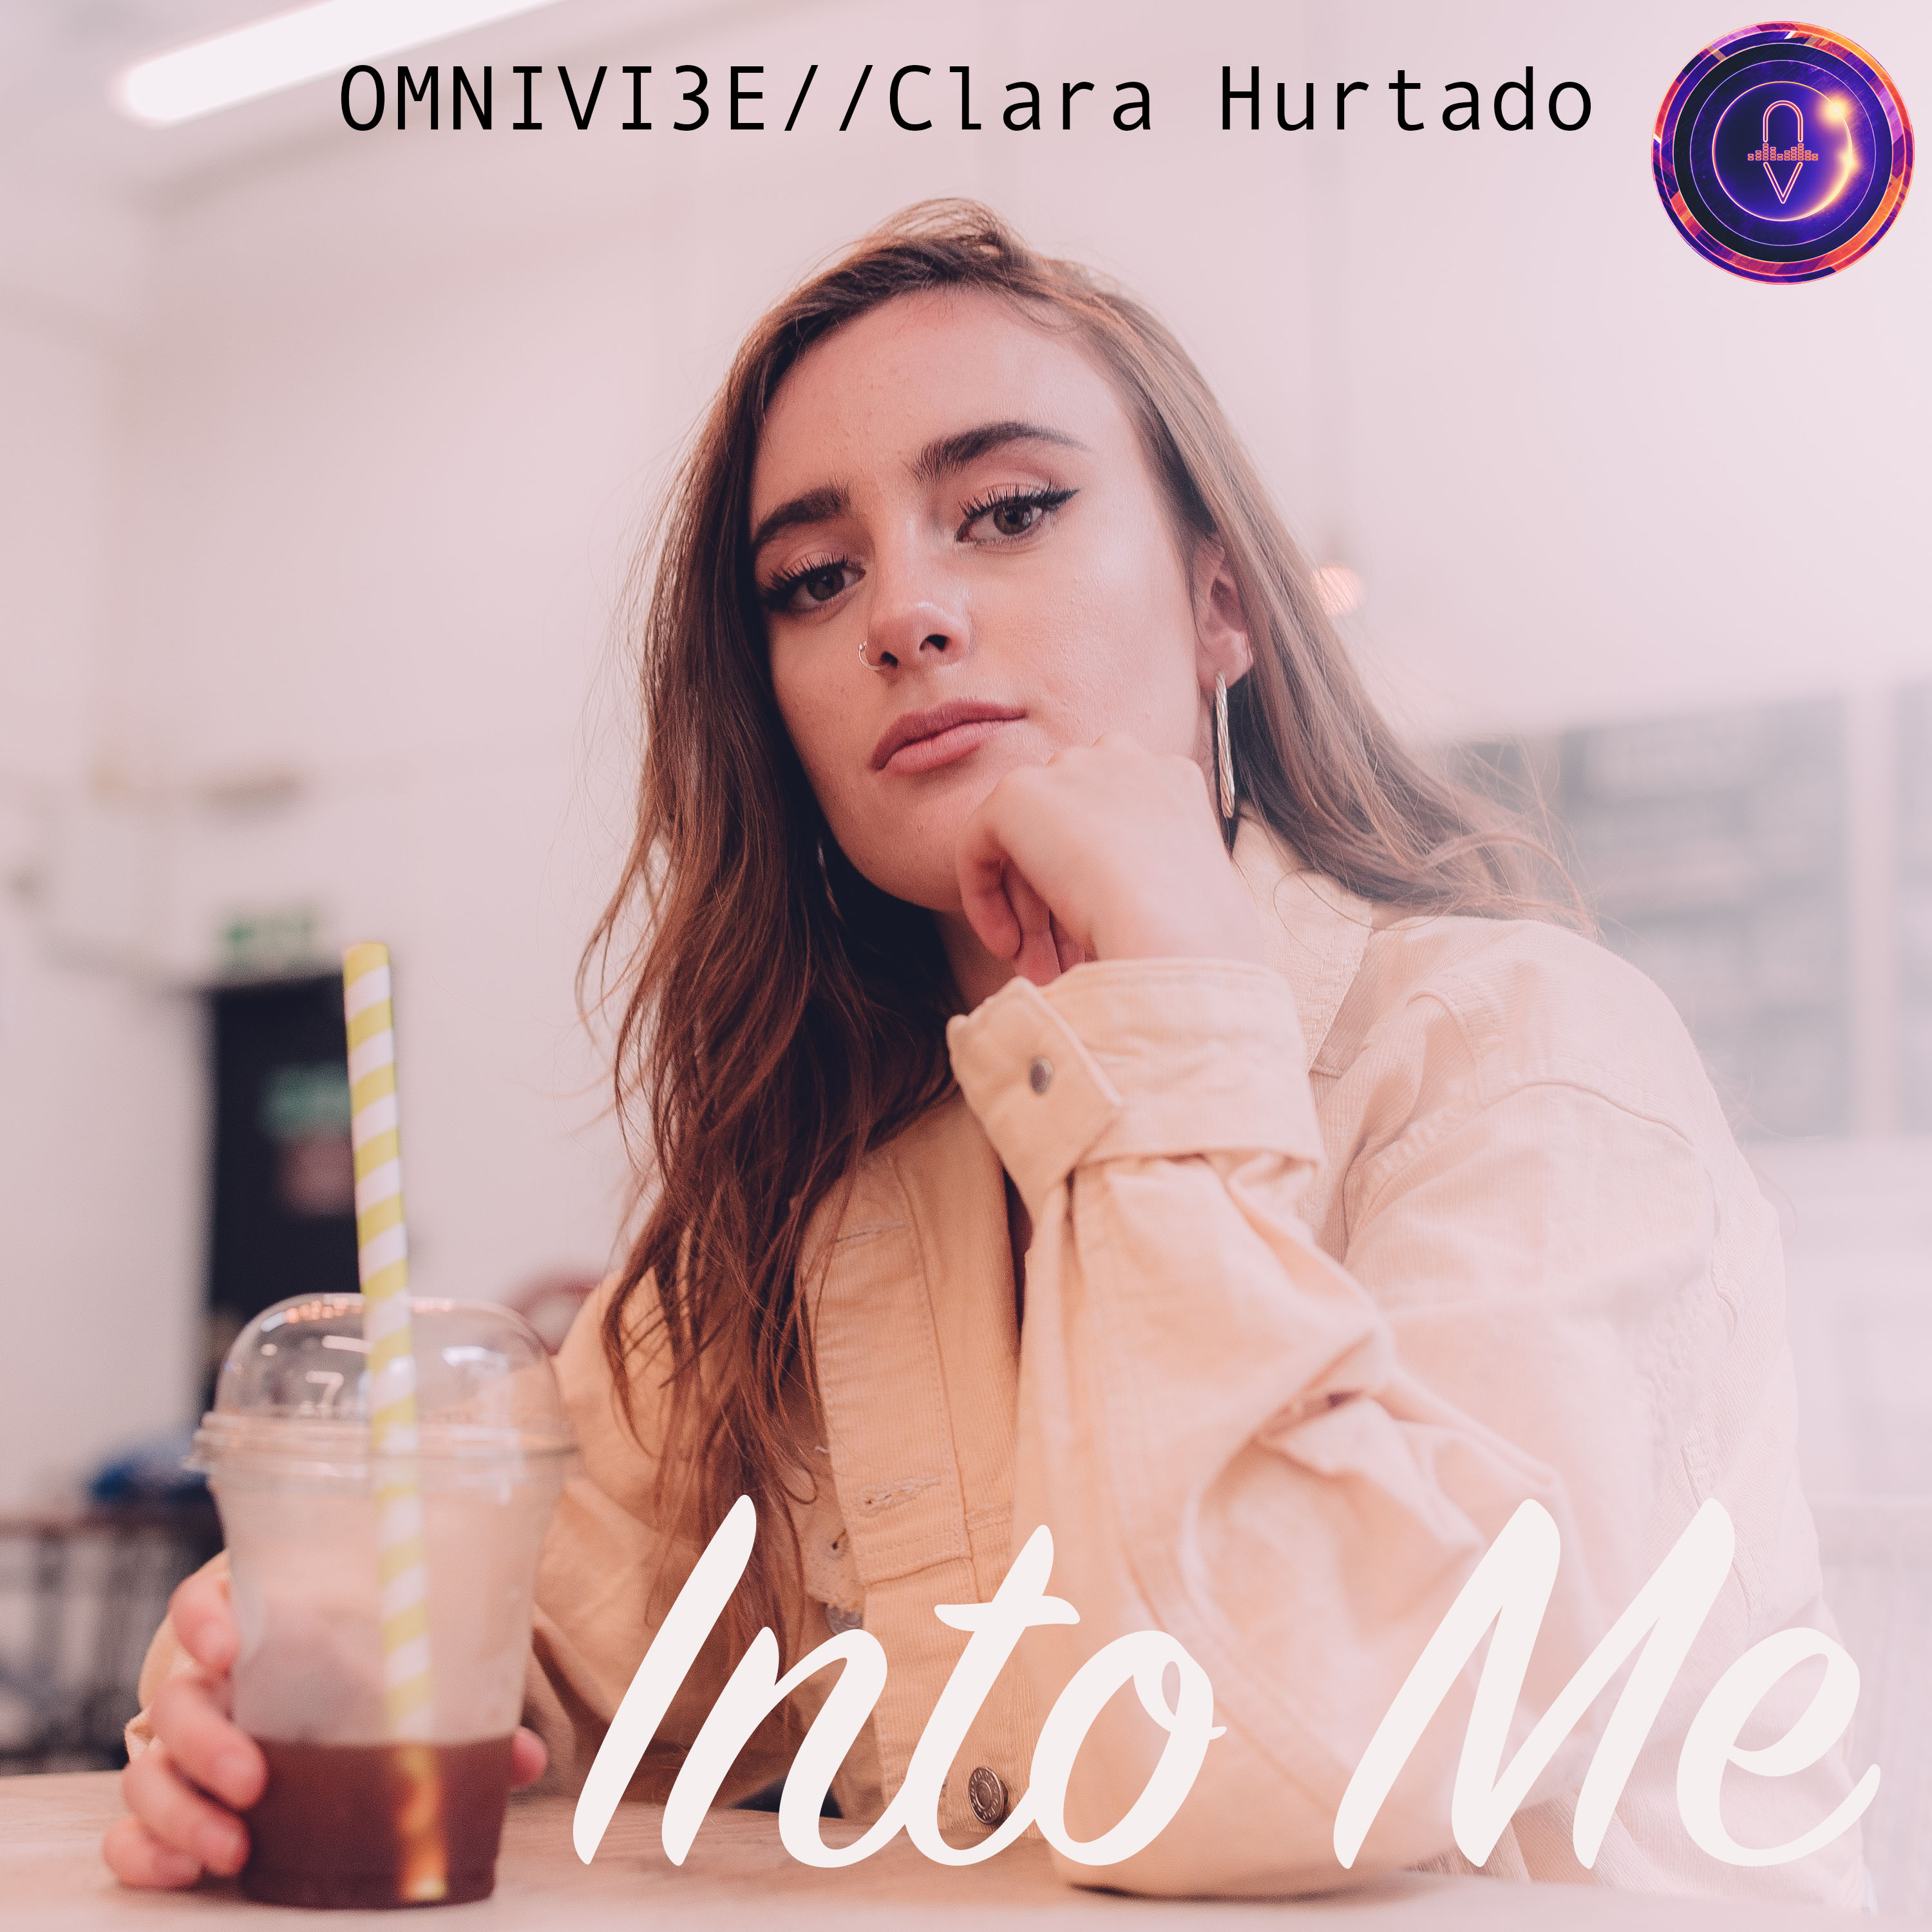 Into Me by Omnivi3e feat. Clara Hurtado